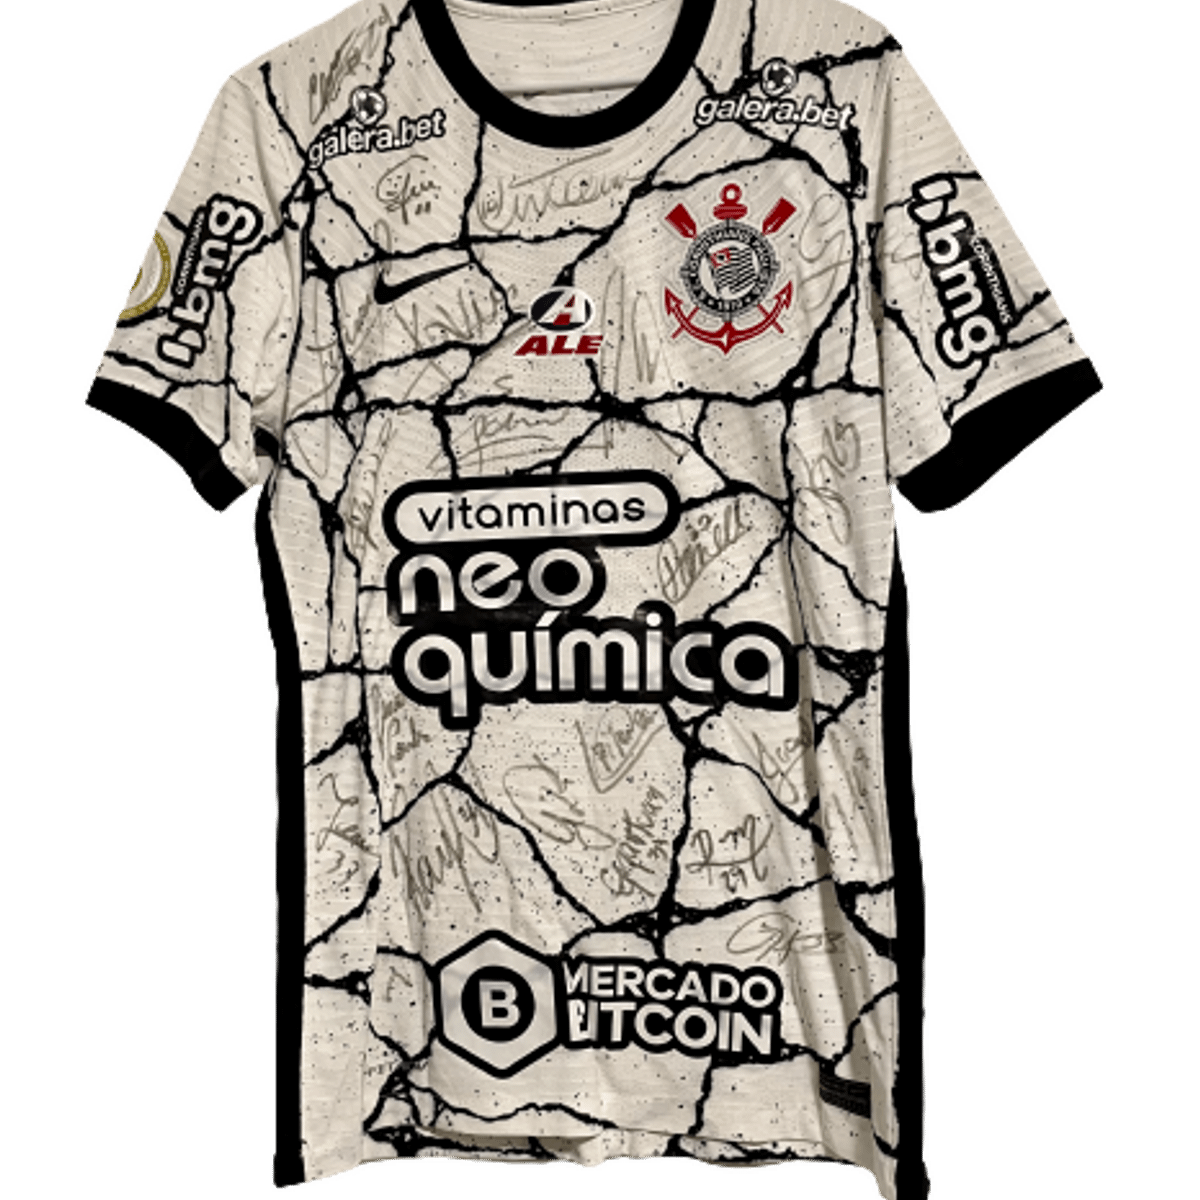 Camisa Corinthians Oficial 2021 – Autografada por todo elenco